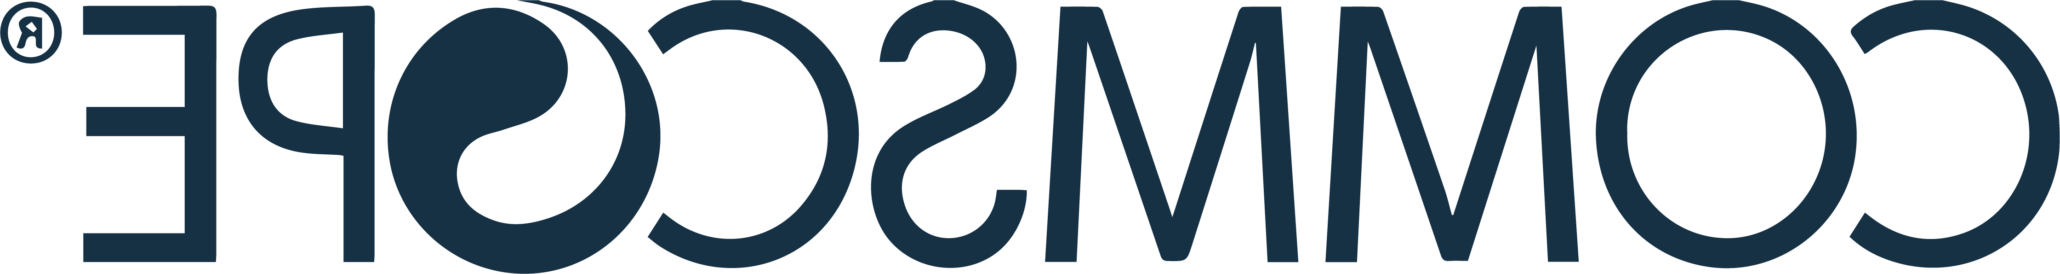 Commscope client logo